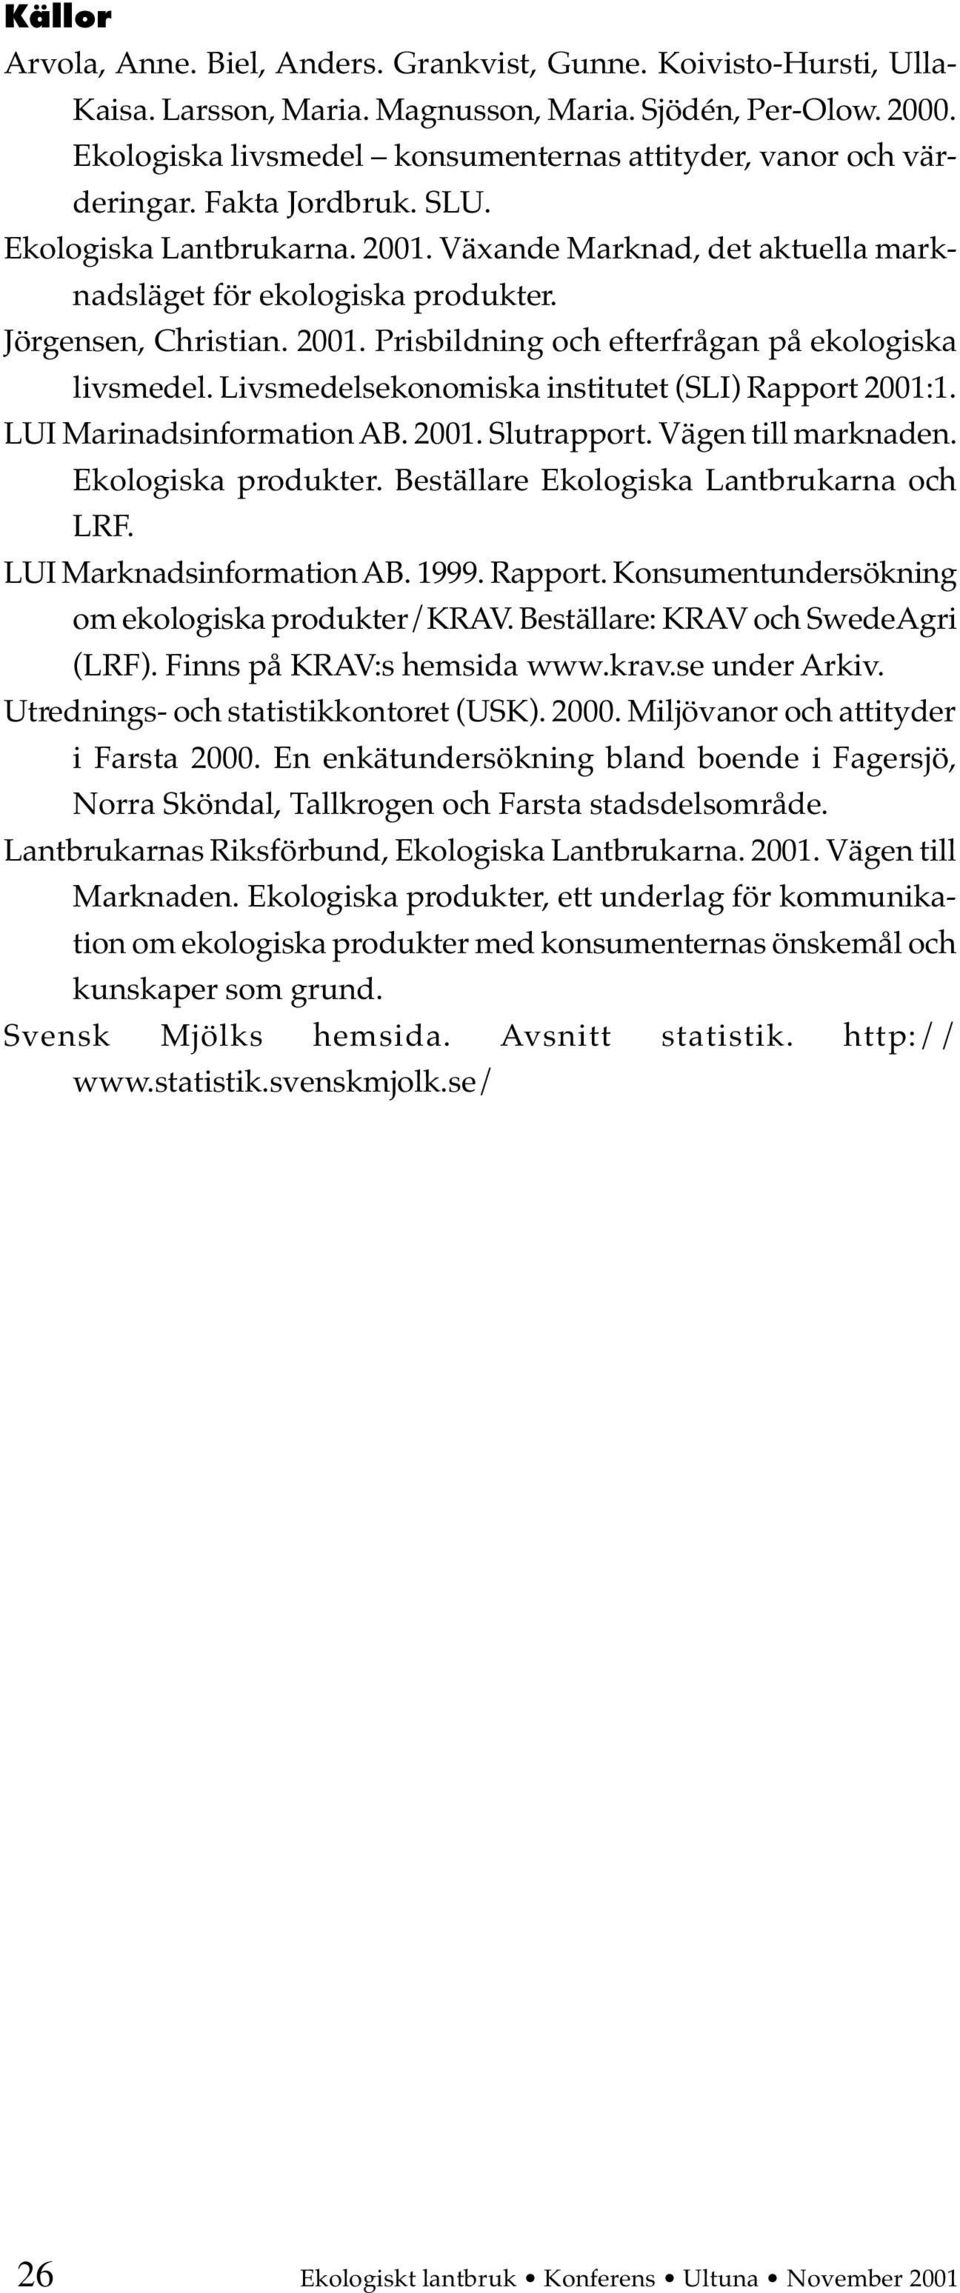 Jörgensen, Christian. 2001. Prisbildning och efterfrågan på ekologiska livsmedel. Livsmedelsekonomiska institutet (SLI) Rapport 2001:1. LUI Marinadsinformation AB. 2001. Slutrapport.